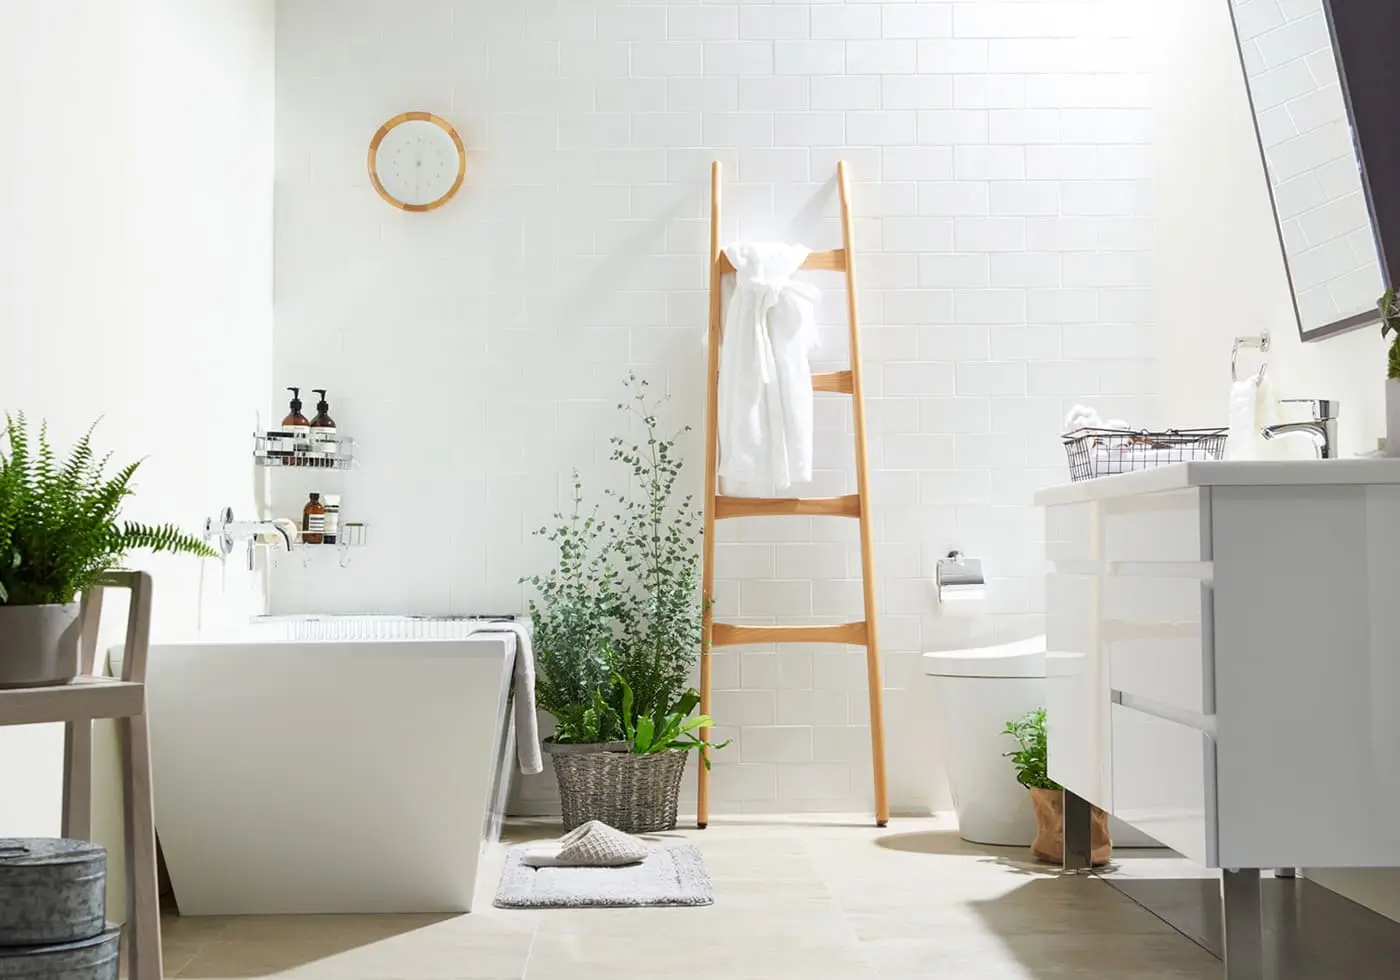 Phong cách đơn giản phù hợp với không gian nhà vệ sinh